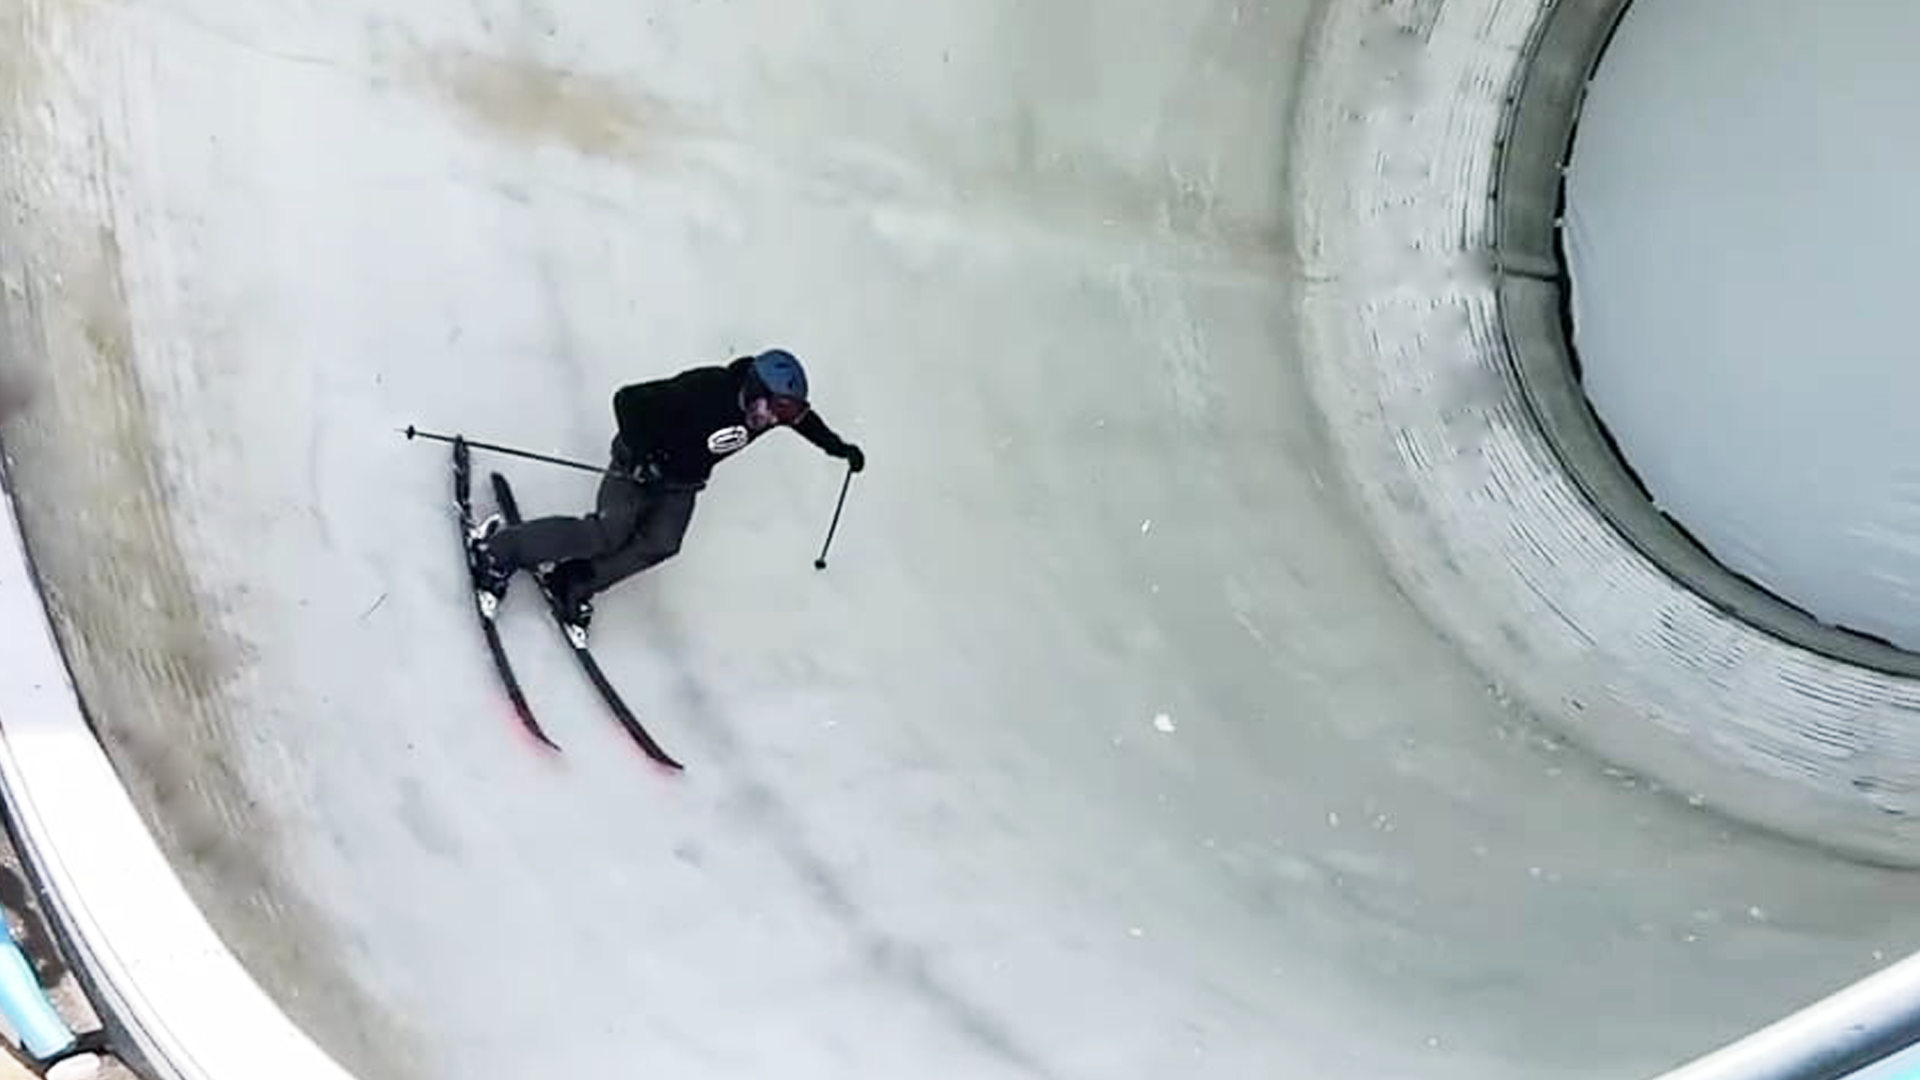 Scott Kessler getting vertical on the Snowtunnel prototype